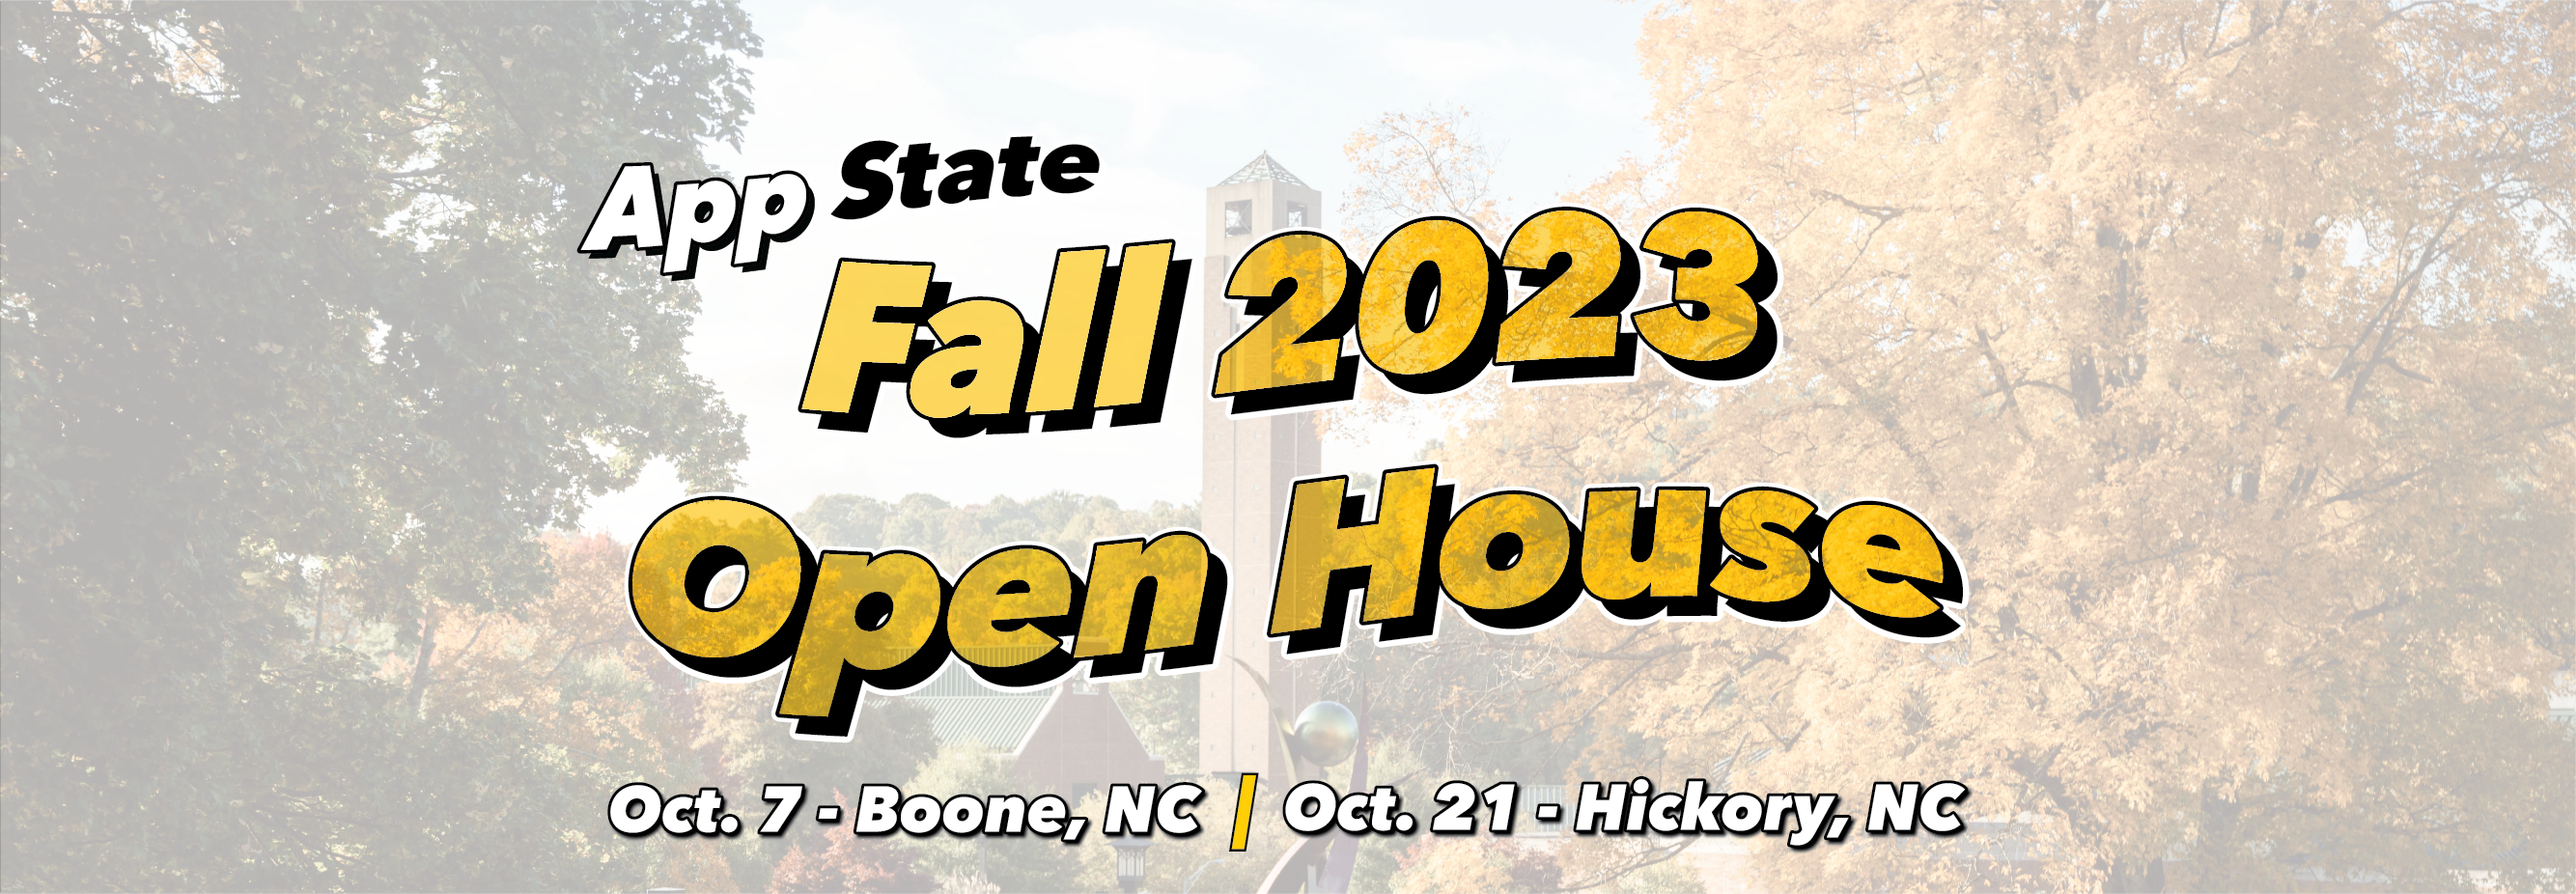 Register for Fall Open House!